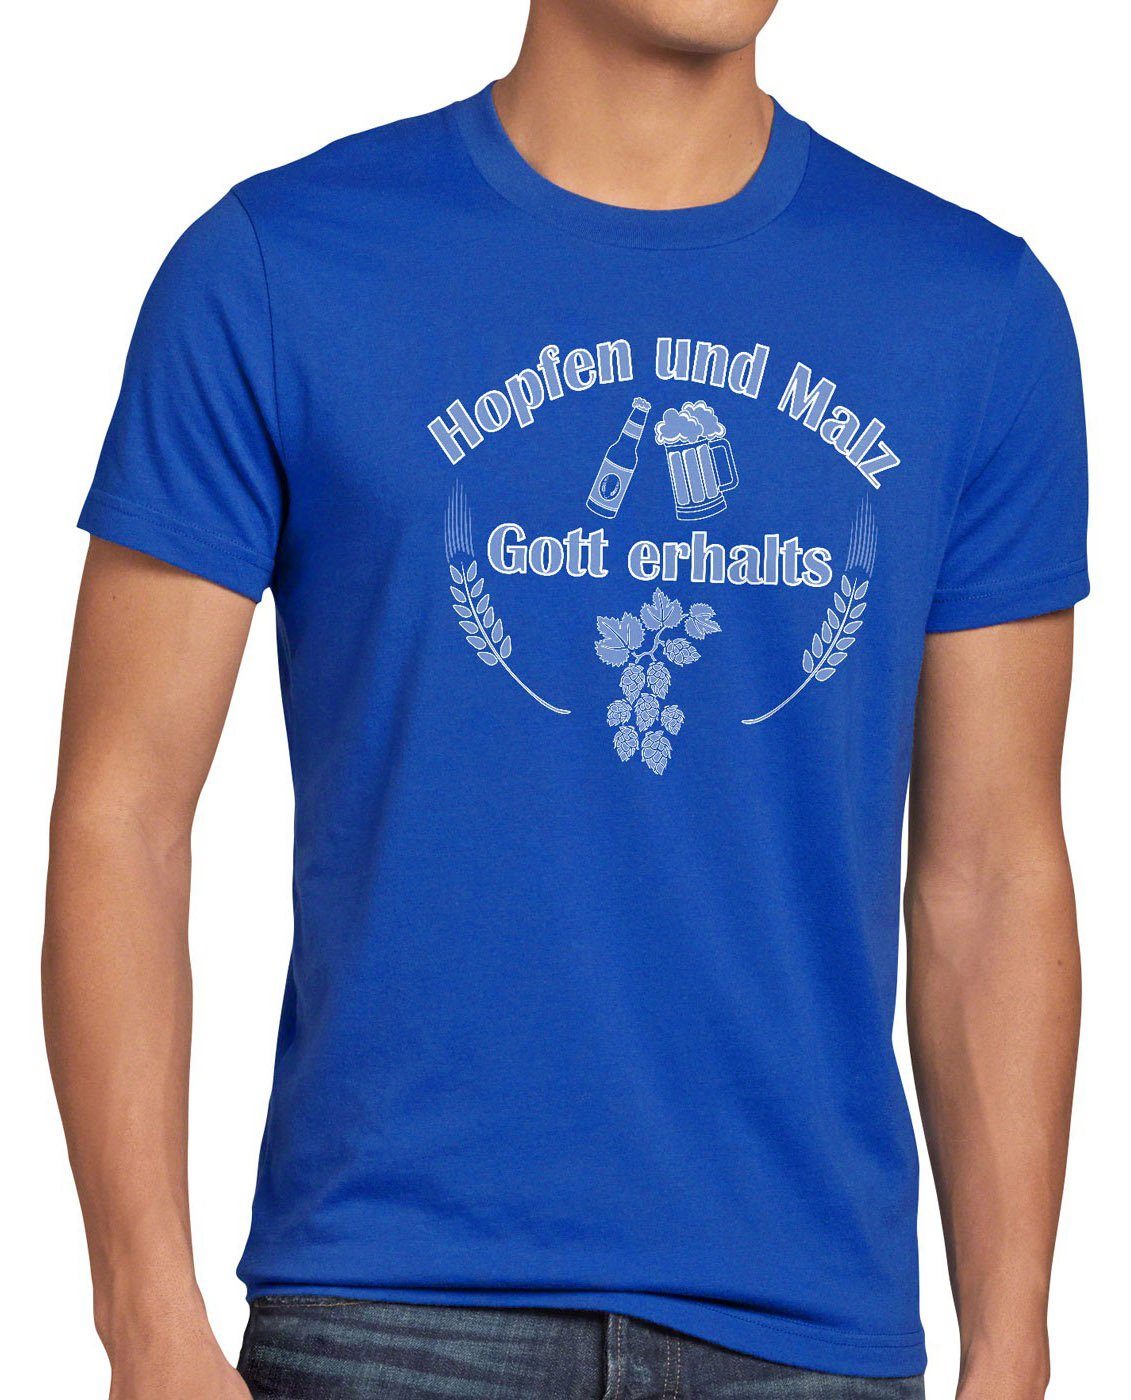 erhalts Malz Spruchshirt Fun style3 Funshirt Bier blau Hopfen und Spruch Gott Print-Shirt Herren T-Shirt